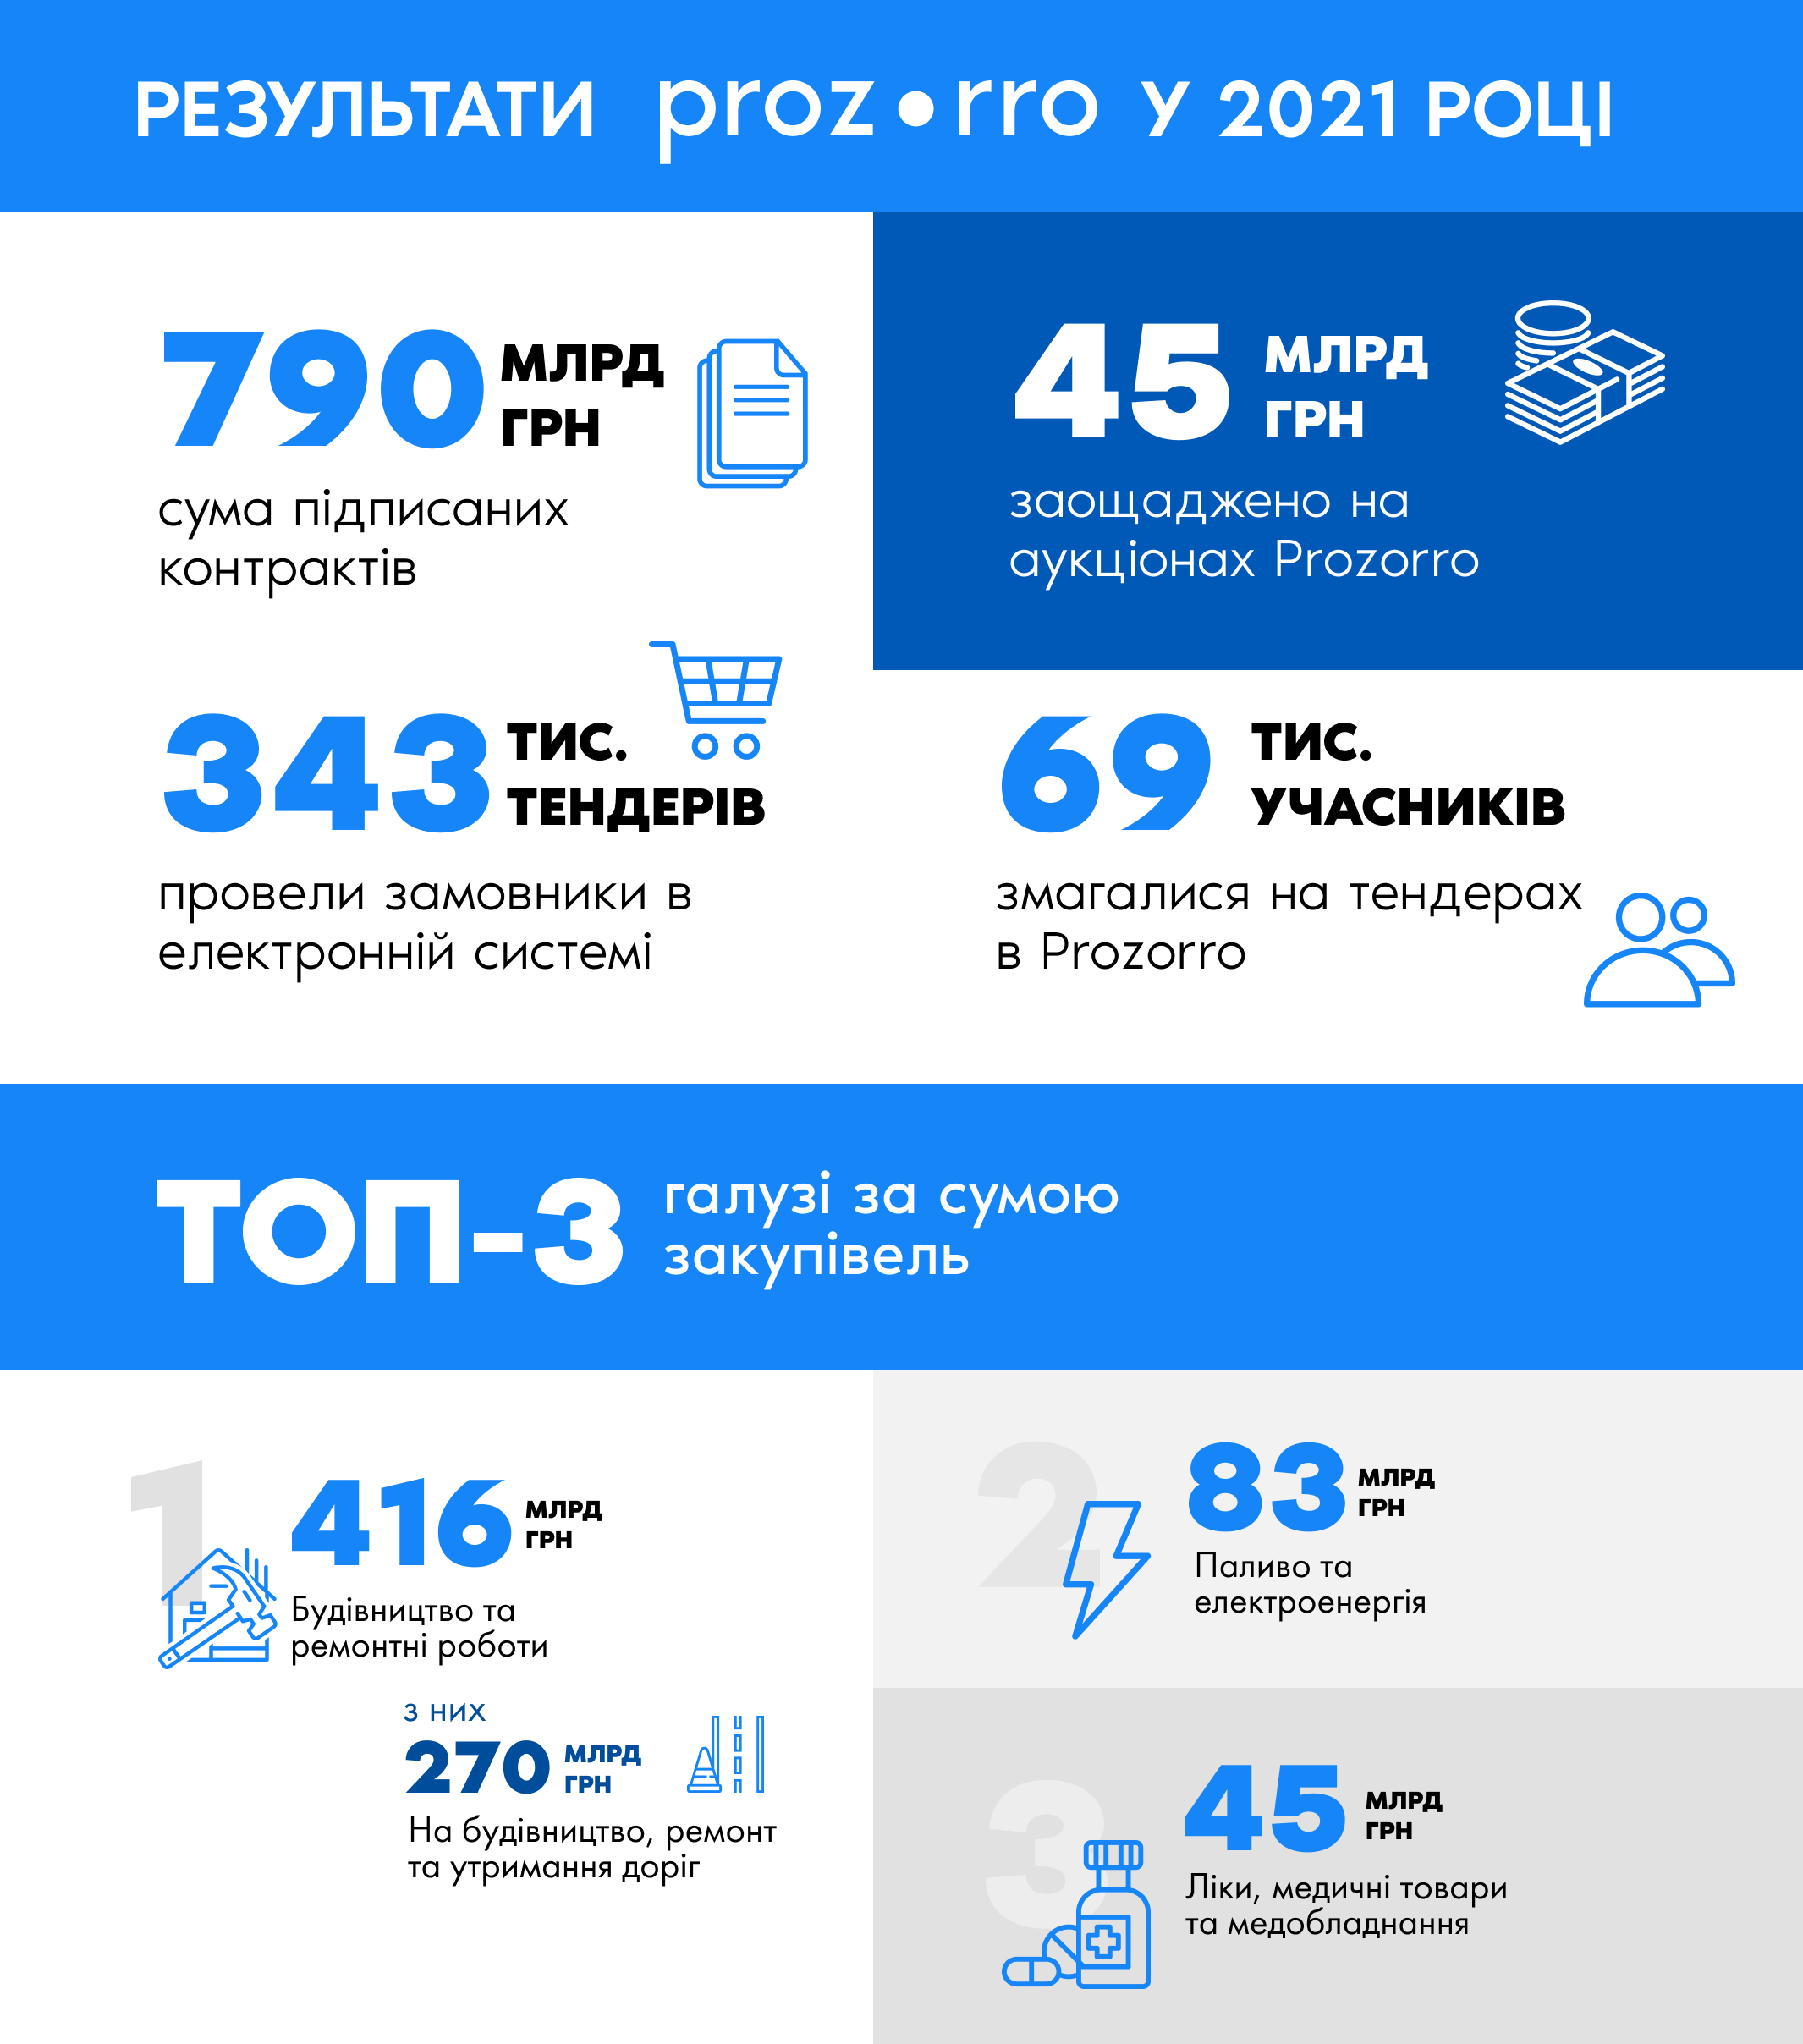 В 2021 році Україна підписала контрактів на Prozorro на суму 790 млрд грн та заощадила 45 млрд грн (інфографіка)